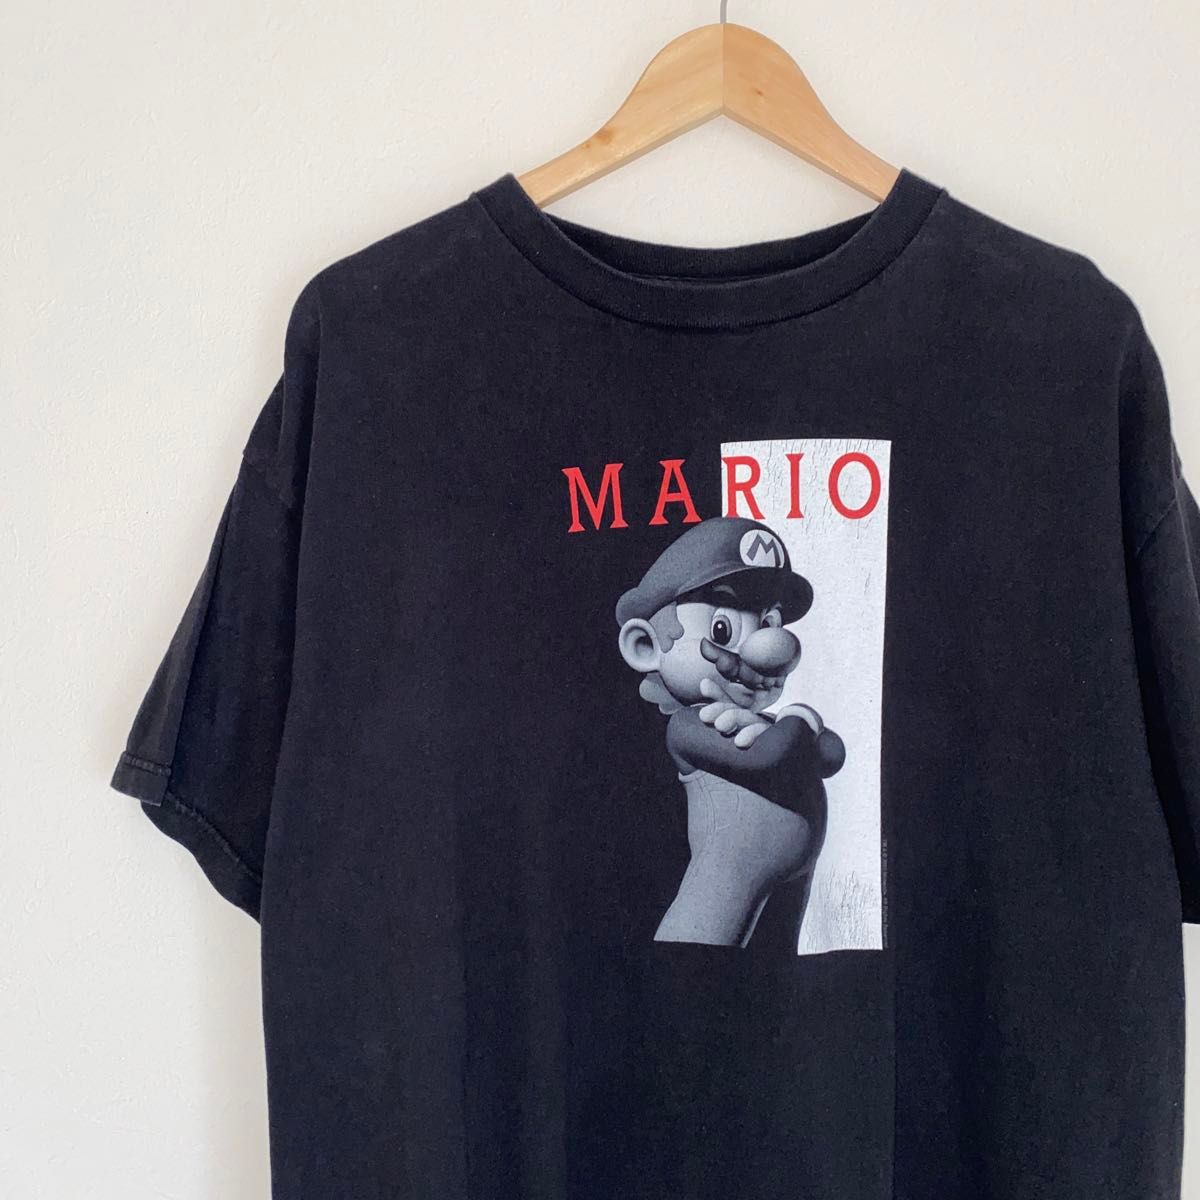 2007 Nintendo MARIO マリオ Tシャツ スカーフェイス 黒 Tシャツ 古着